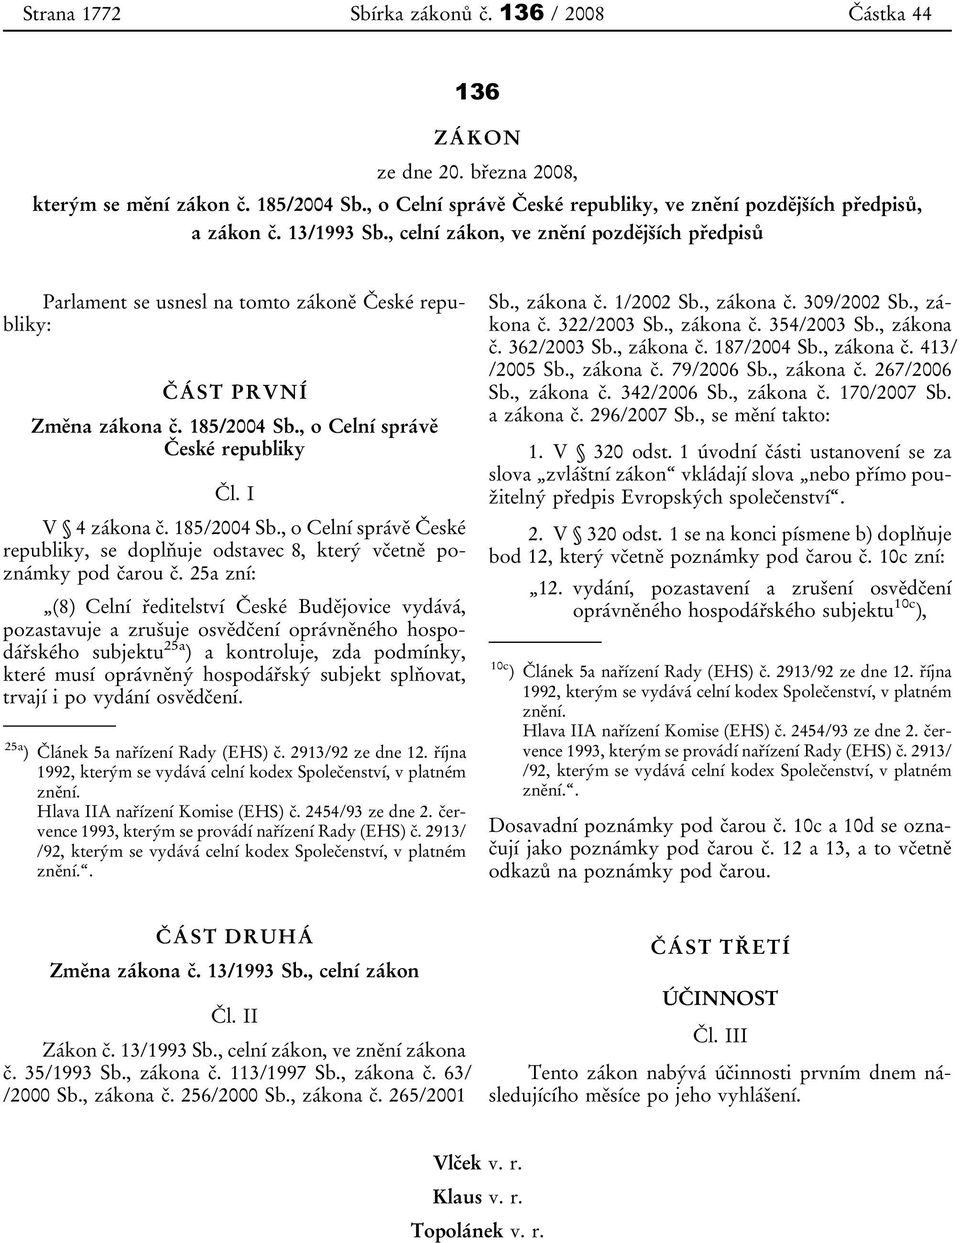 185/2004 Sb., o Celní správě České republiky, se doplňuje odstavec 8, který včetně poznámky pod čarou č.